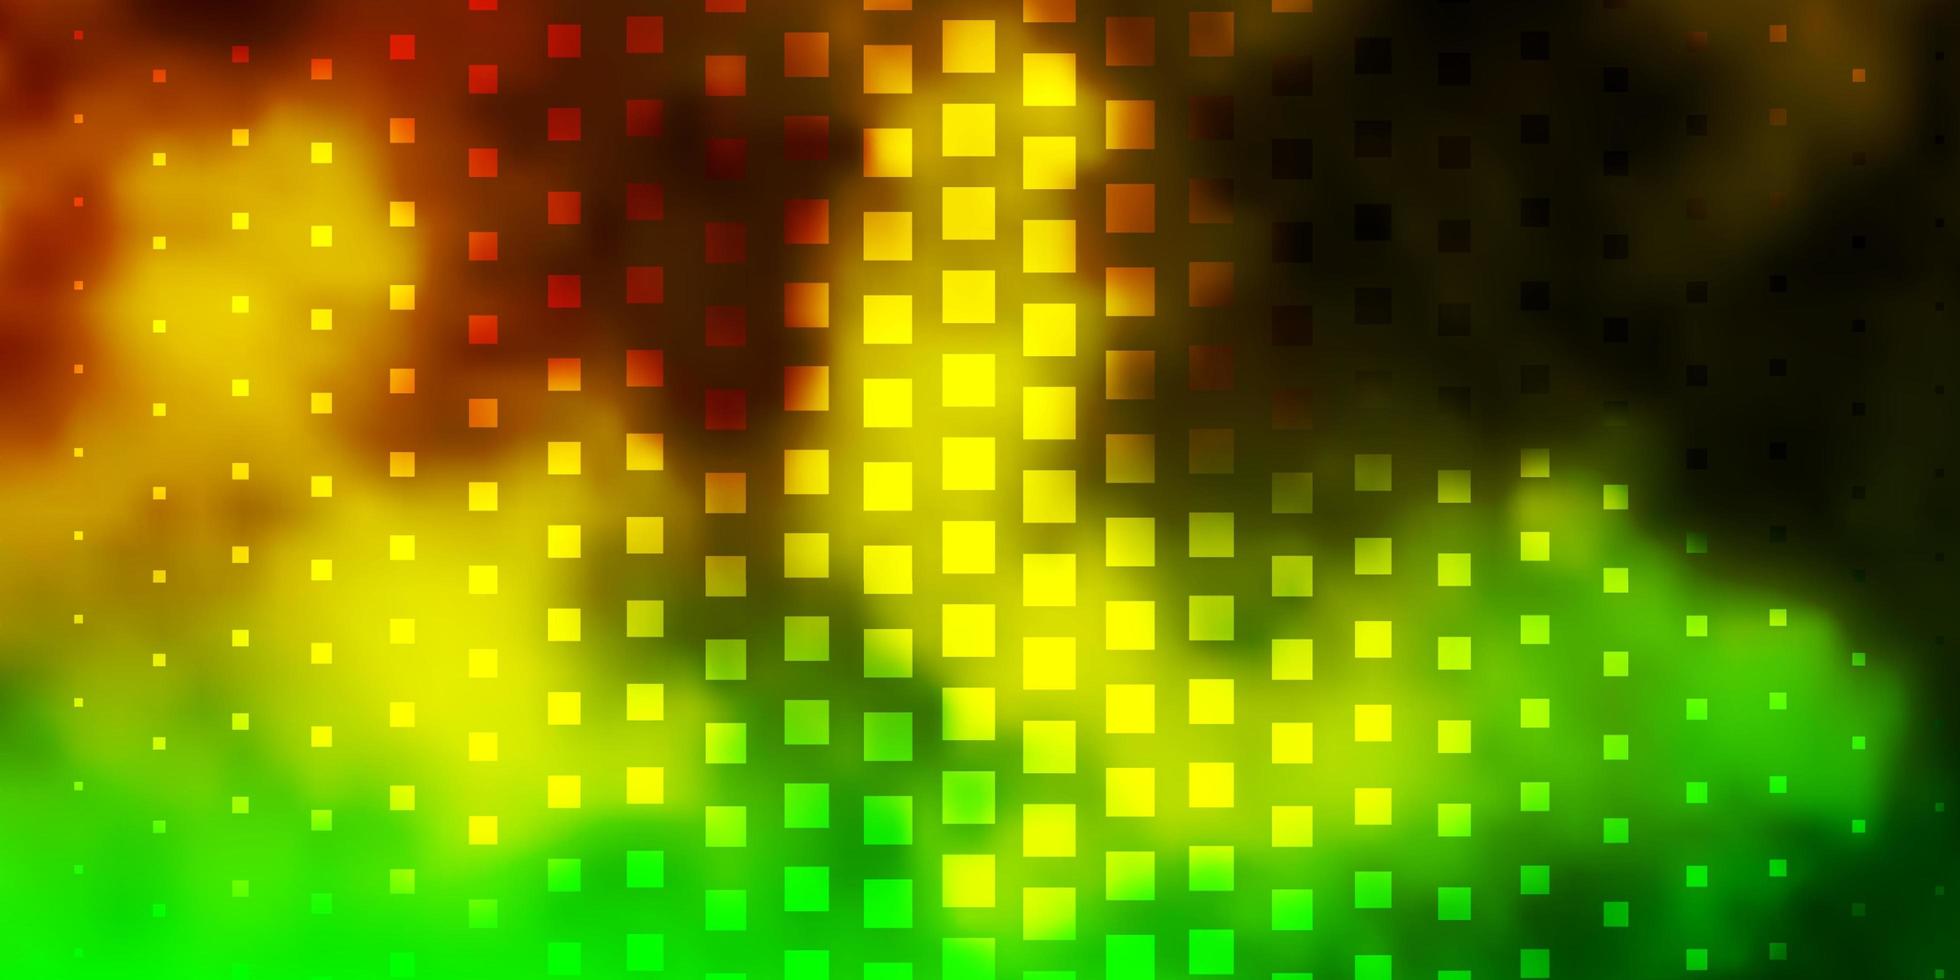 hellgrünes, gelbes Vektorlayout mit Linien, Rechtecken. vektor